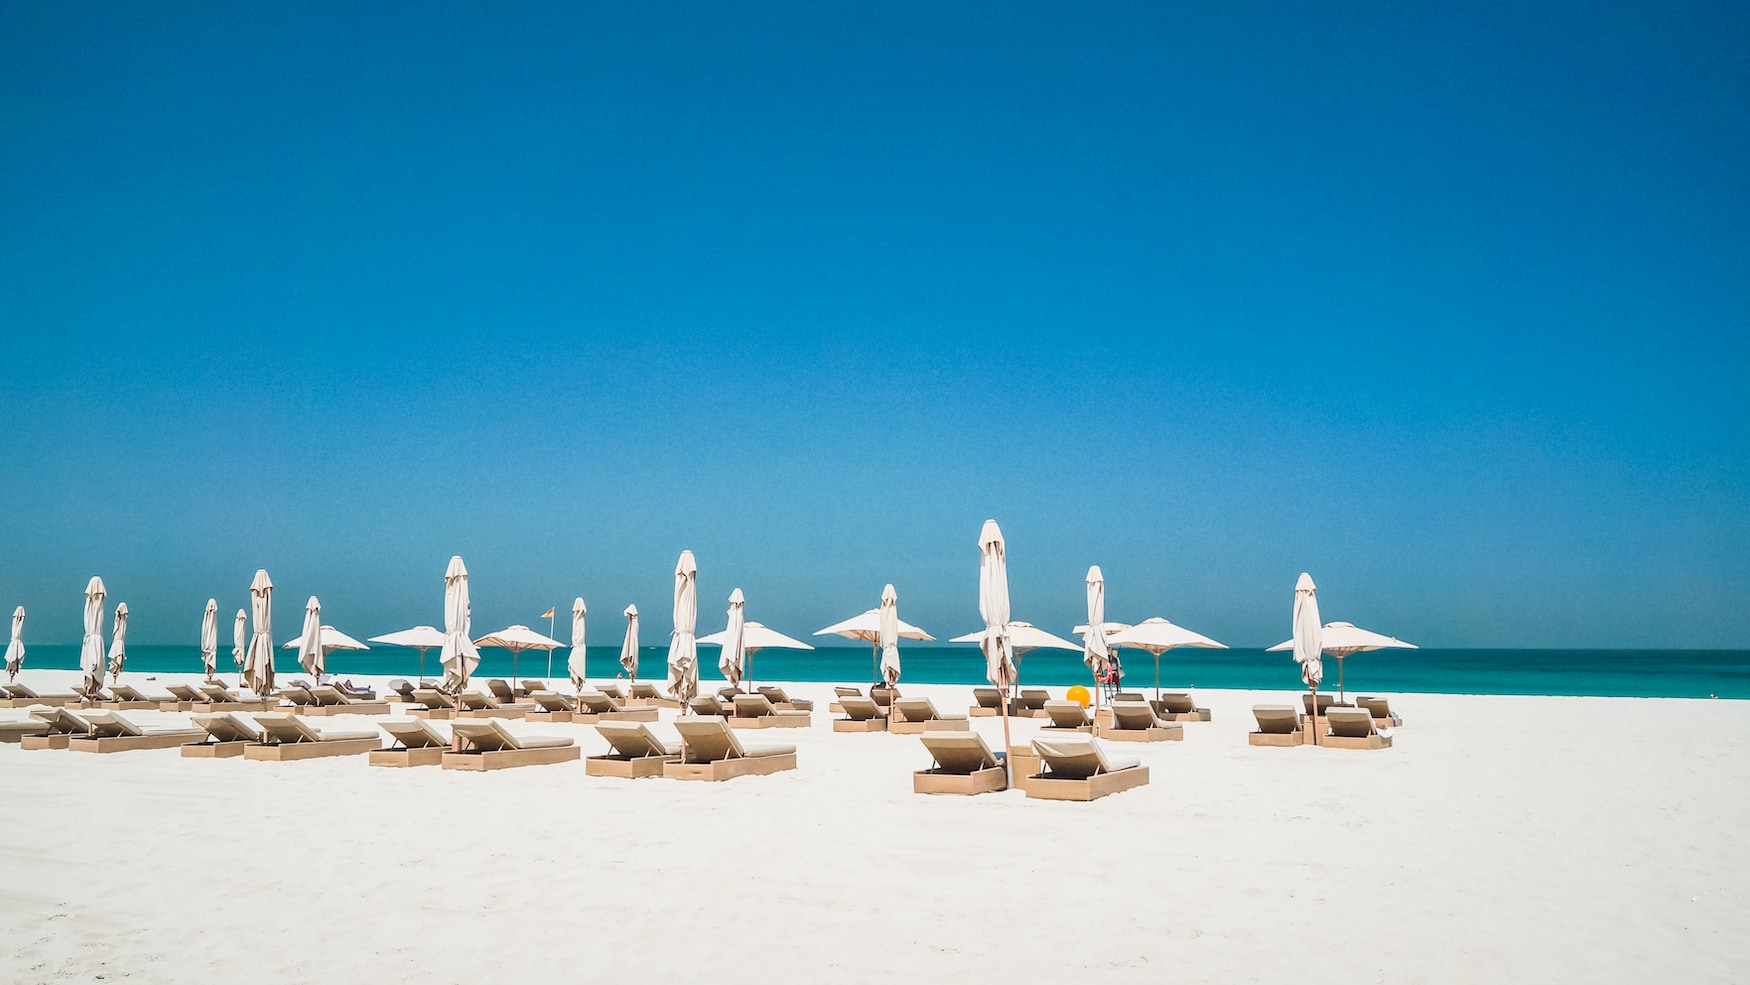 Saadiyat Beach Club in Abu Dhabi